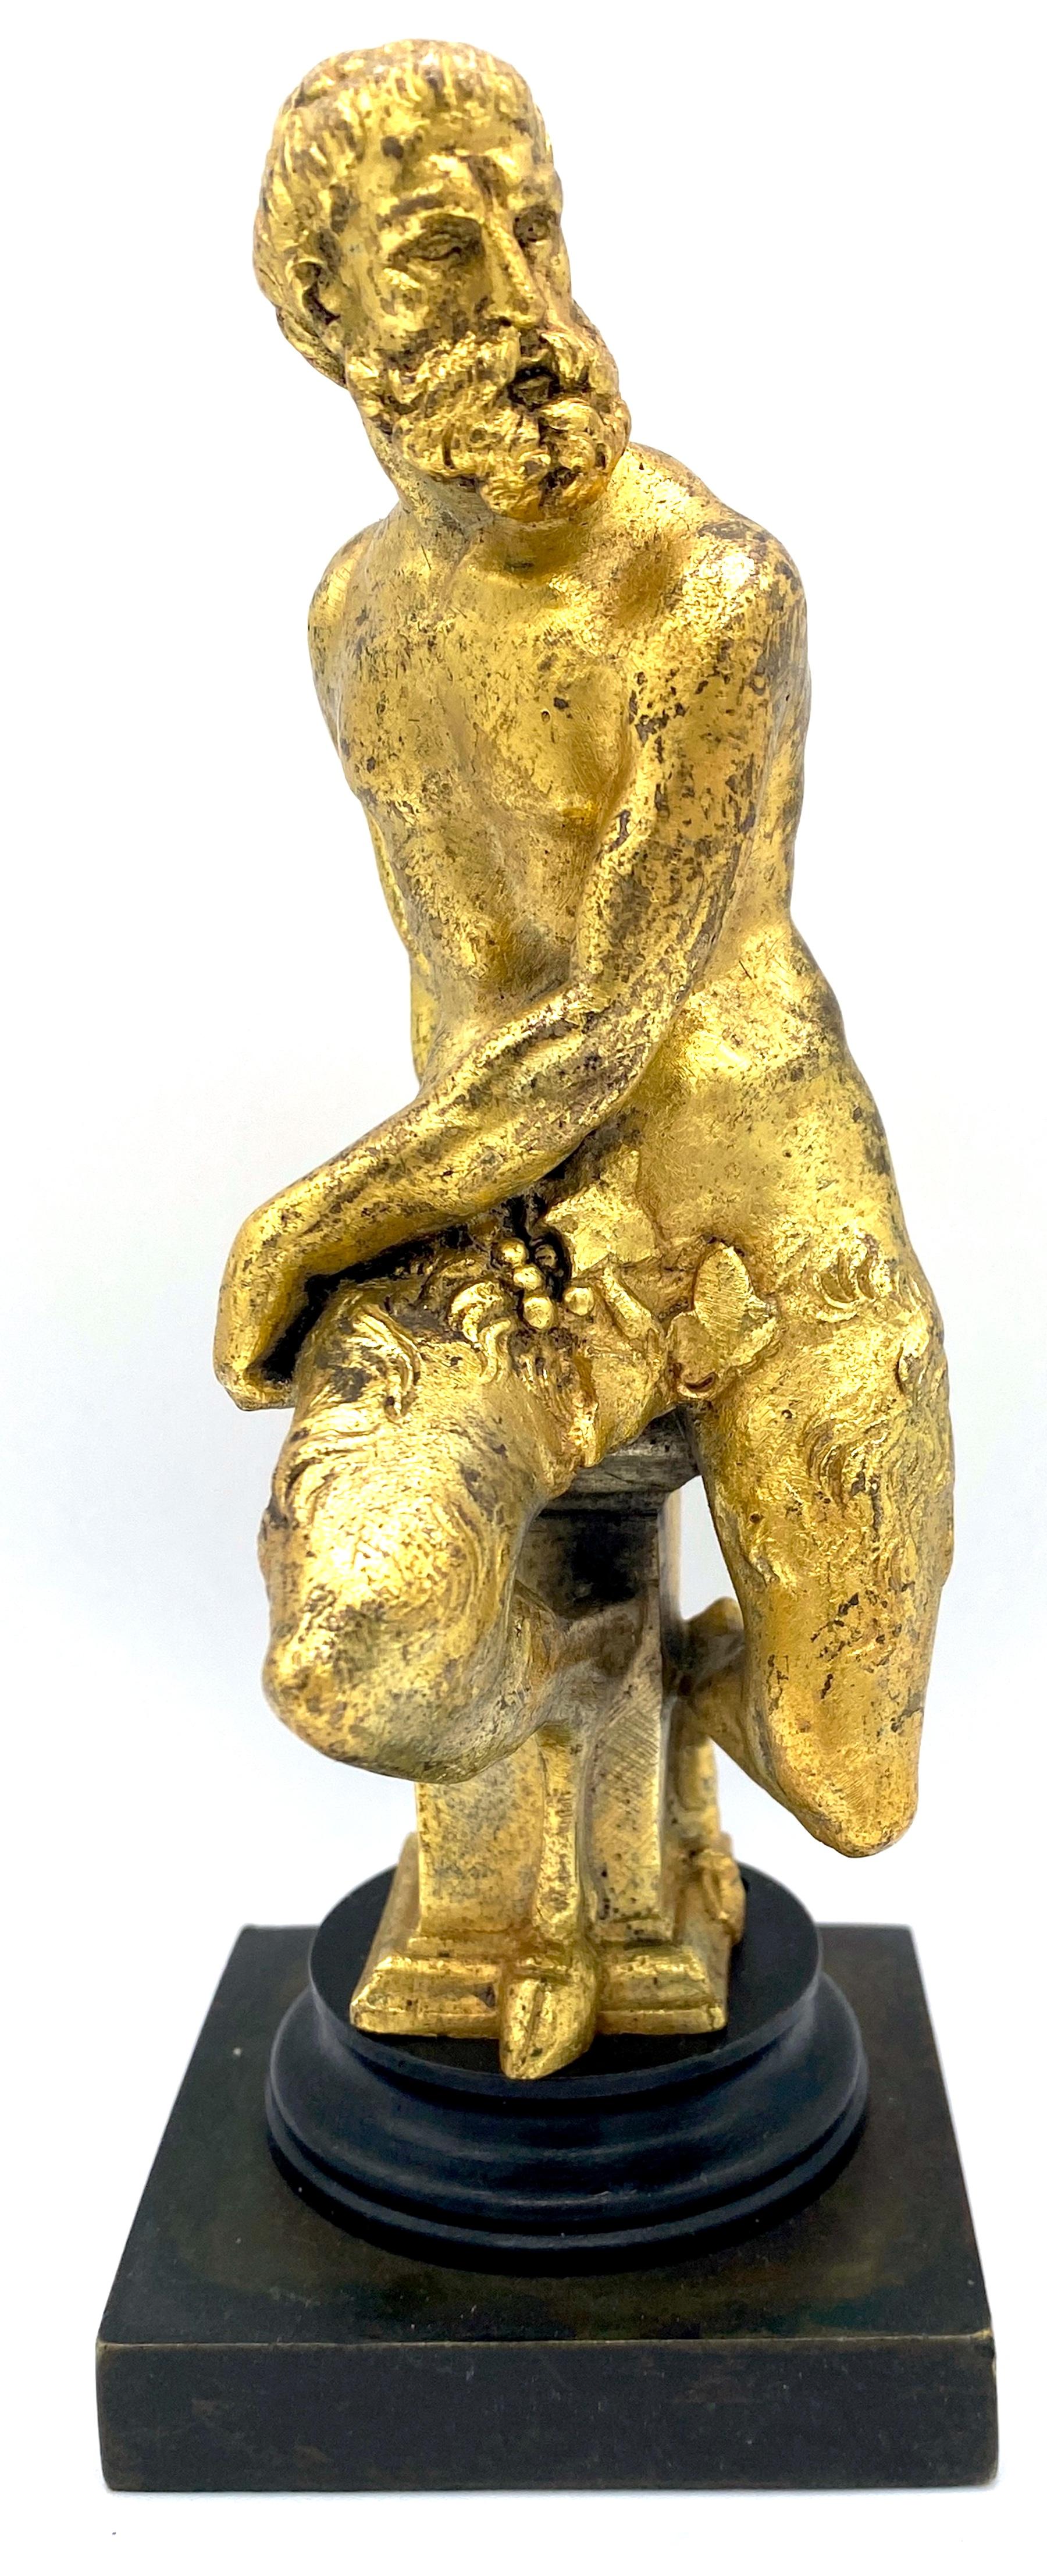 Französische Ormolu- und patinierte Bronzeskulptur eines sitzenden Satyrs aus dem 19. 
Frankreich, ca. 1875

Eine gute Qualität 19. Jahrhundert Französisch Ormolu & patiniert Bronze-Skulptur eines sitzenden Satyr, um 1875 gemacht. Diese gut